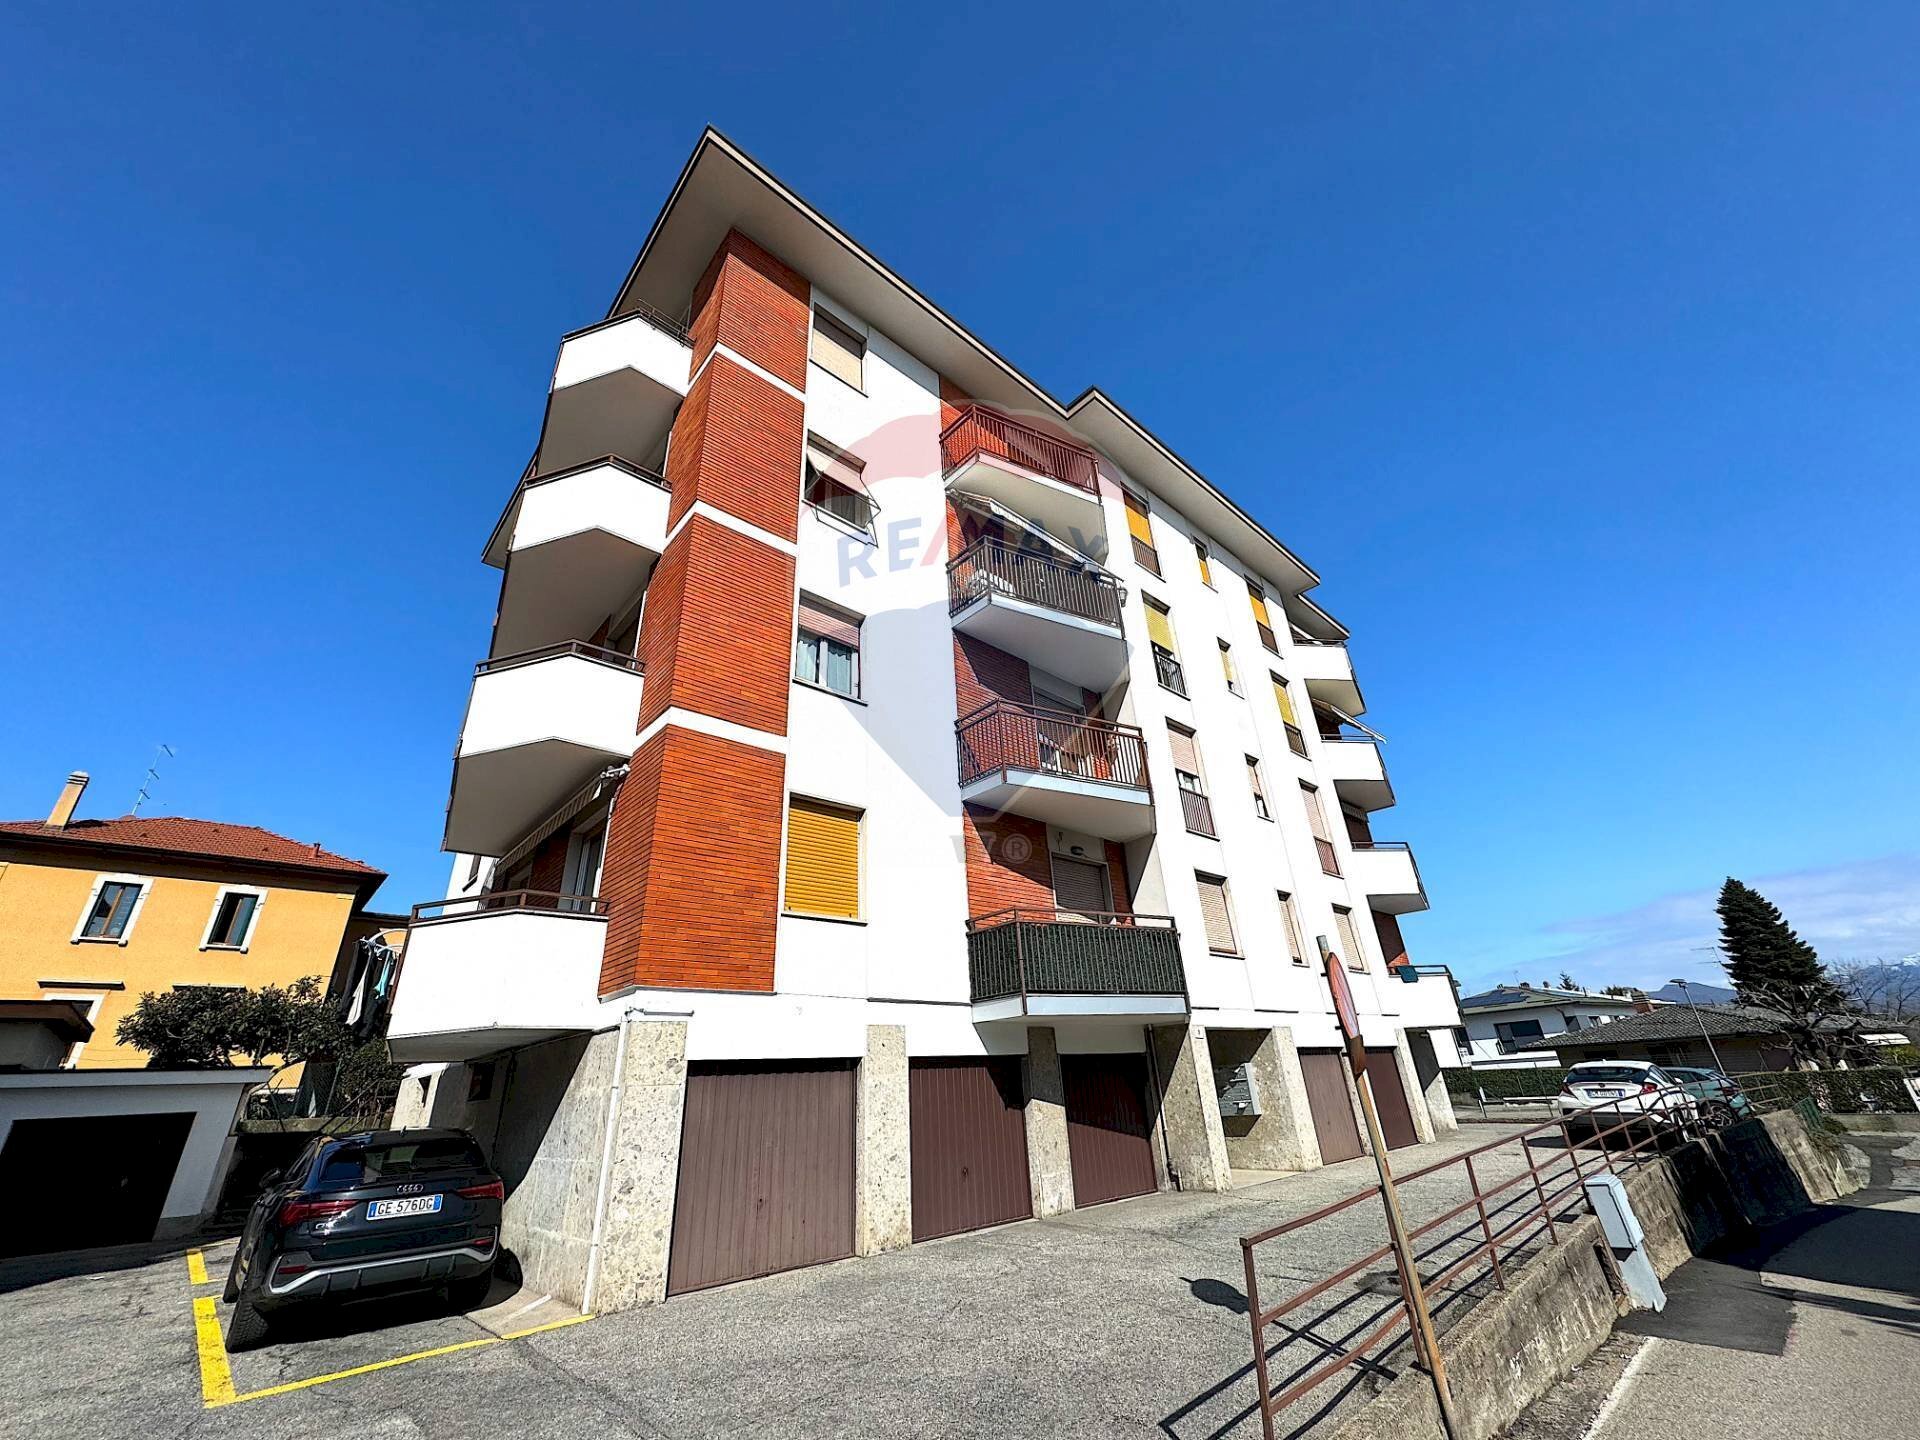 Vendita Appartamento Via Malnasca, 3
Giubiano, Varese